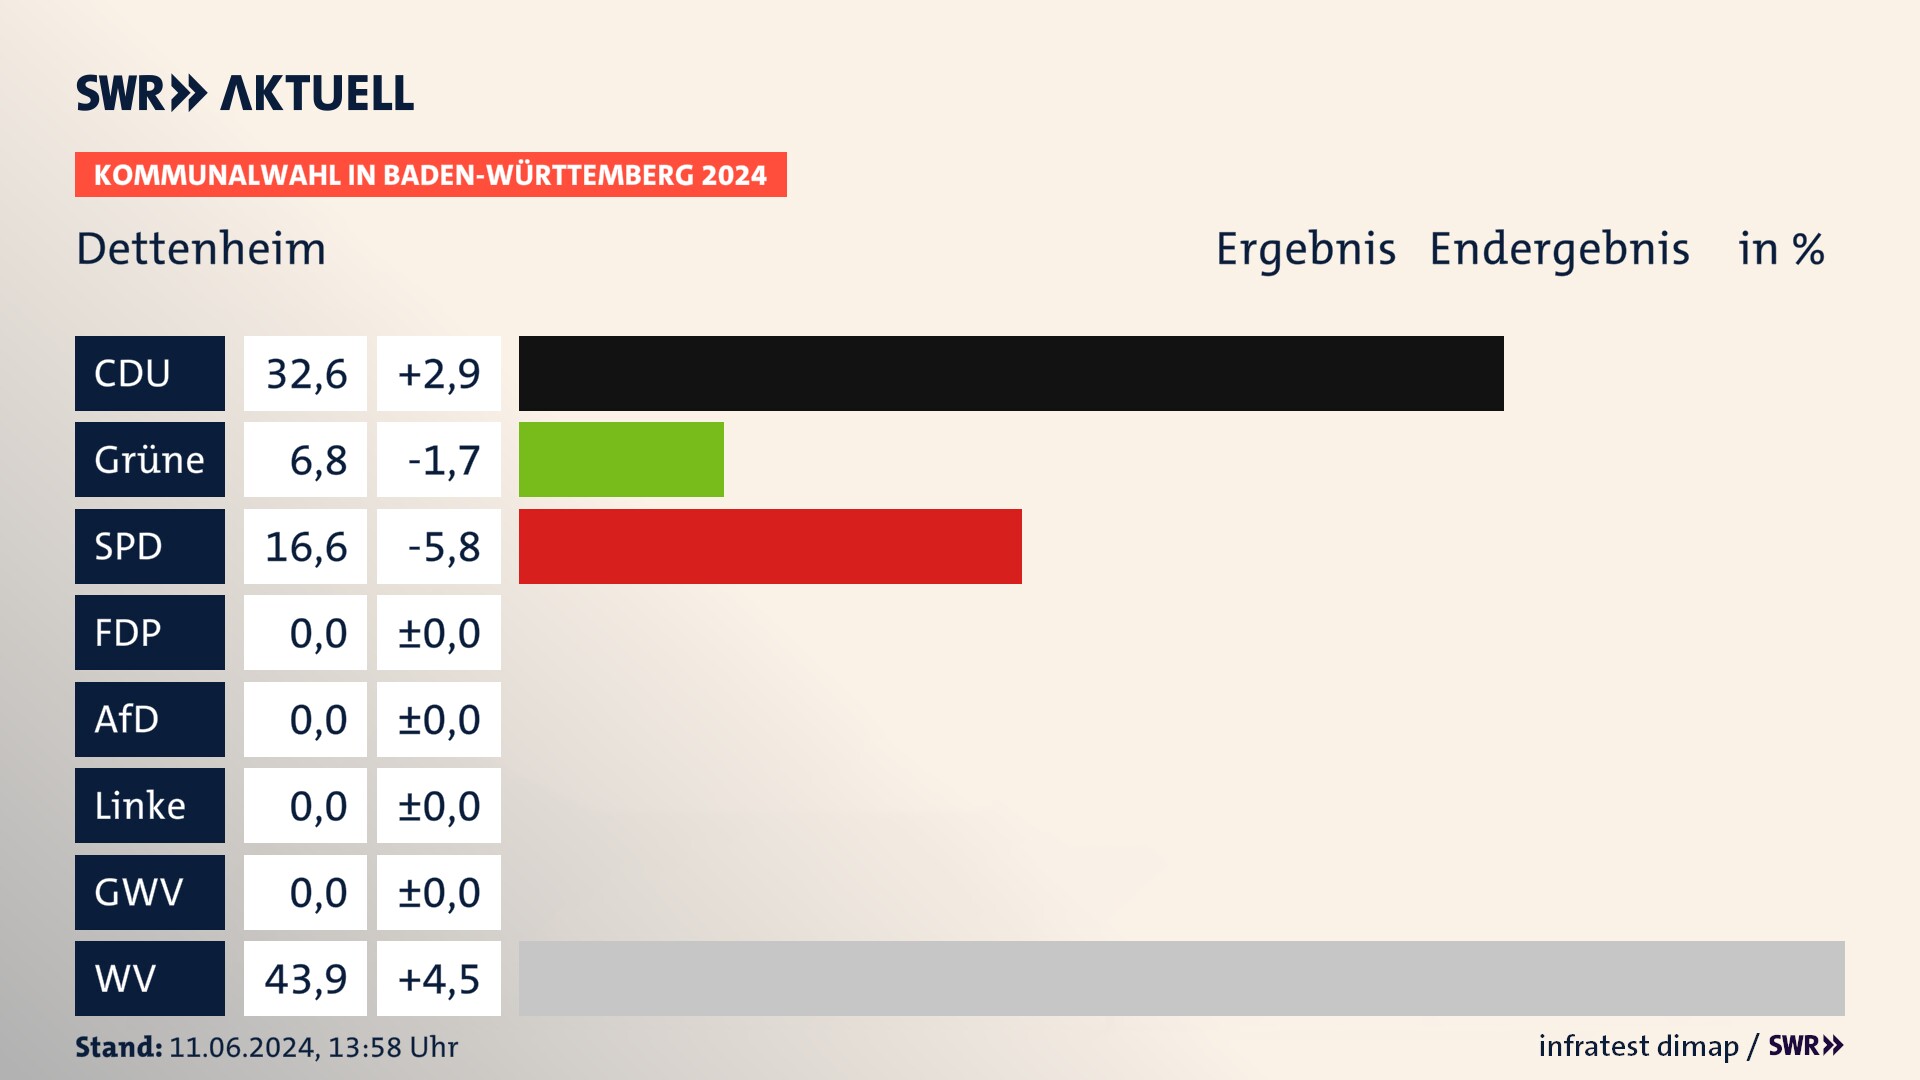 Kommunalwahl 2024 Endergebnis Zweitstimme für Dettenheim. In Dettenheim erzielt die CDU 32,6 Prozent der gültigen  Stimmen. Die Grünen landen bei 6,8 Prozent. Die SPD erreicht 16,6 Prozent. Die Wählervereinigungen kommen auf 43,9 Prozent.